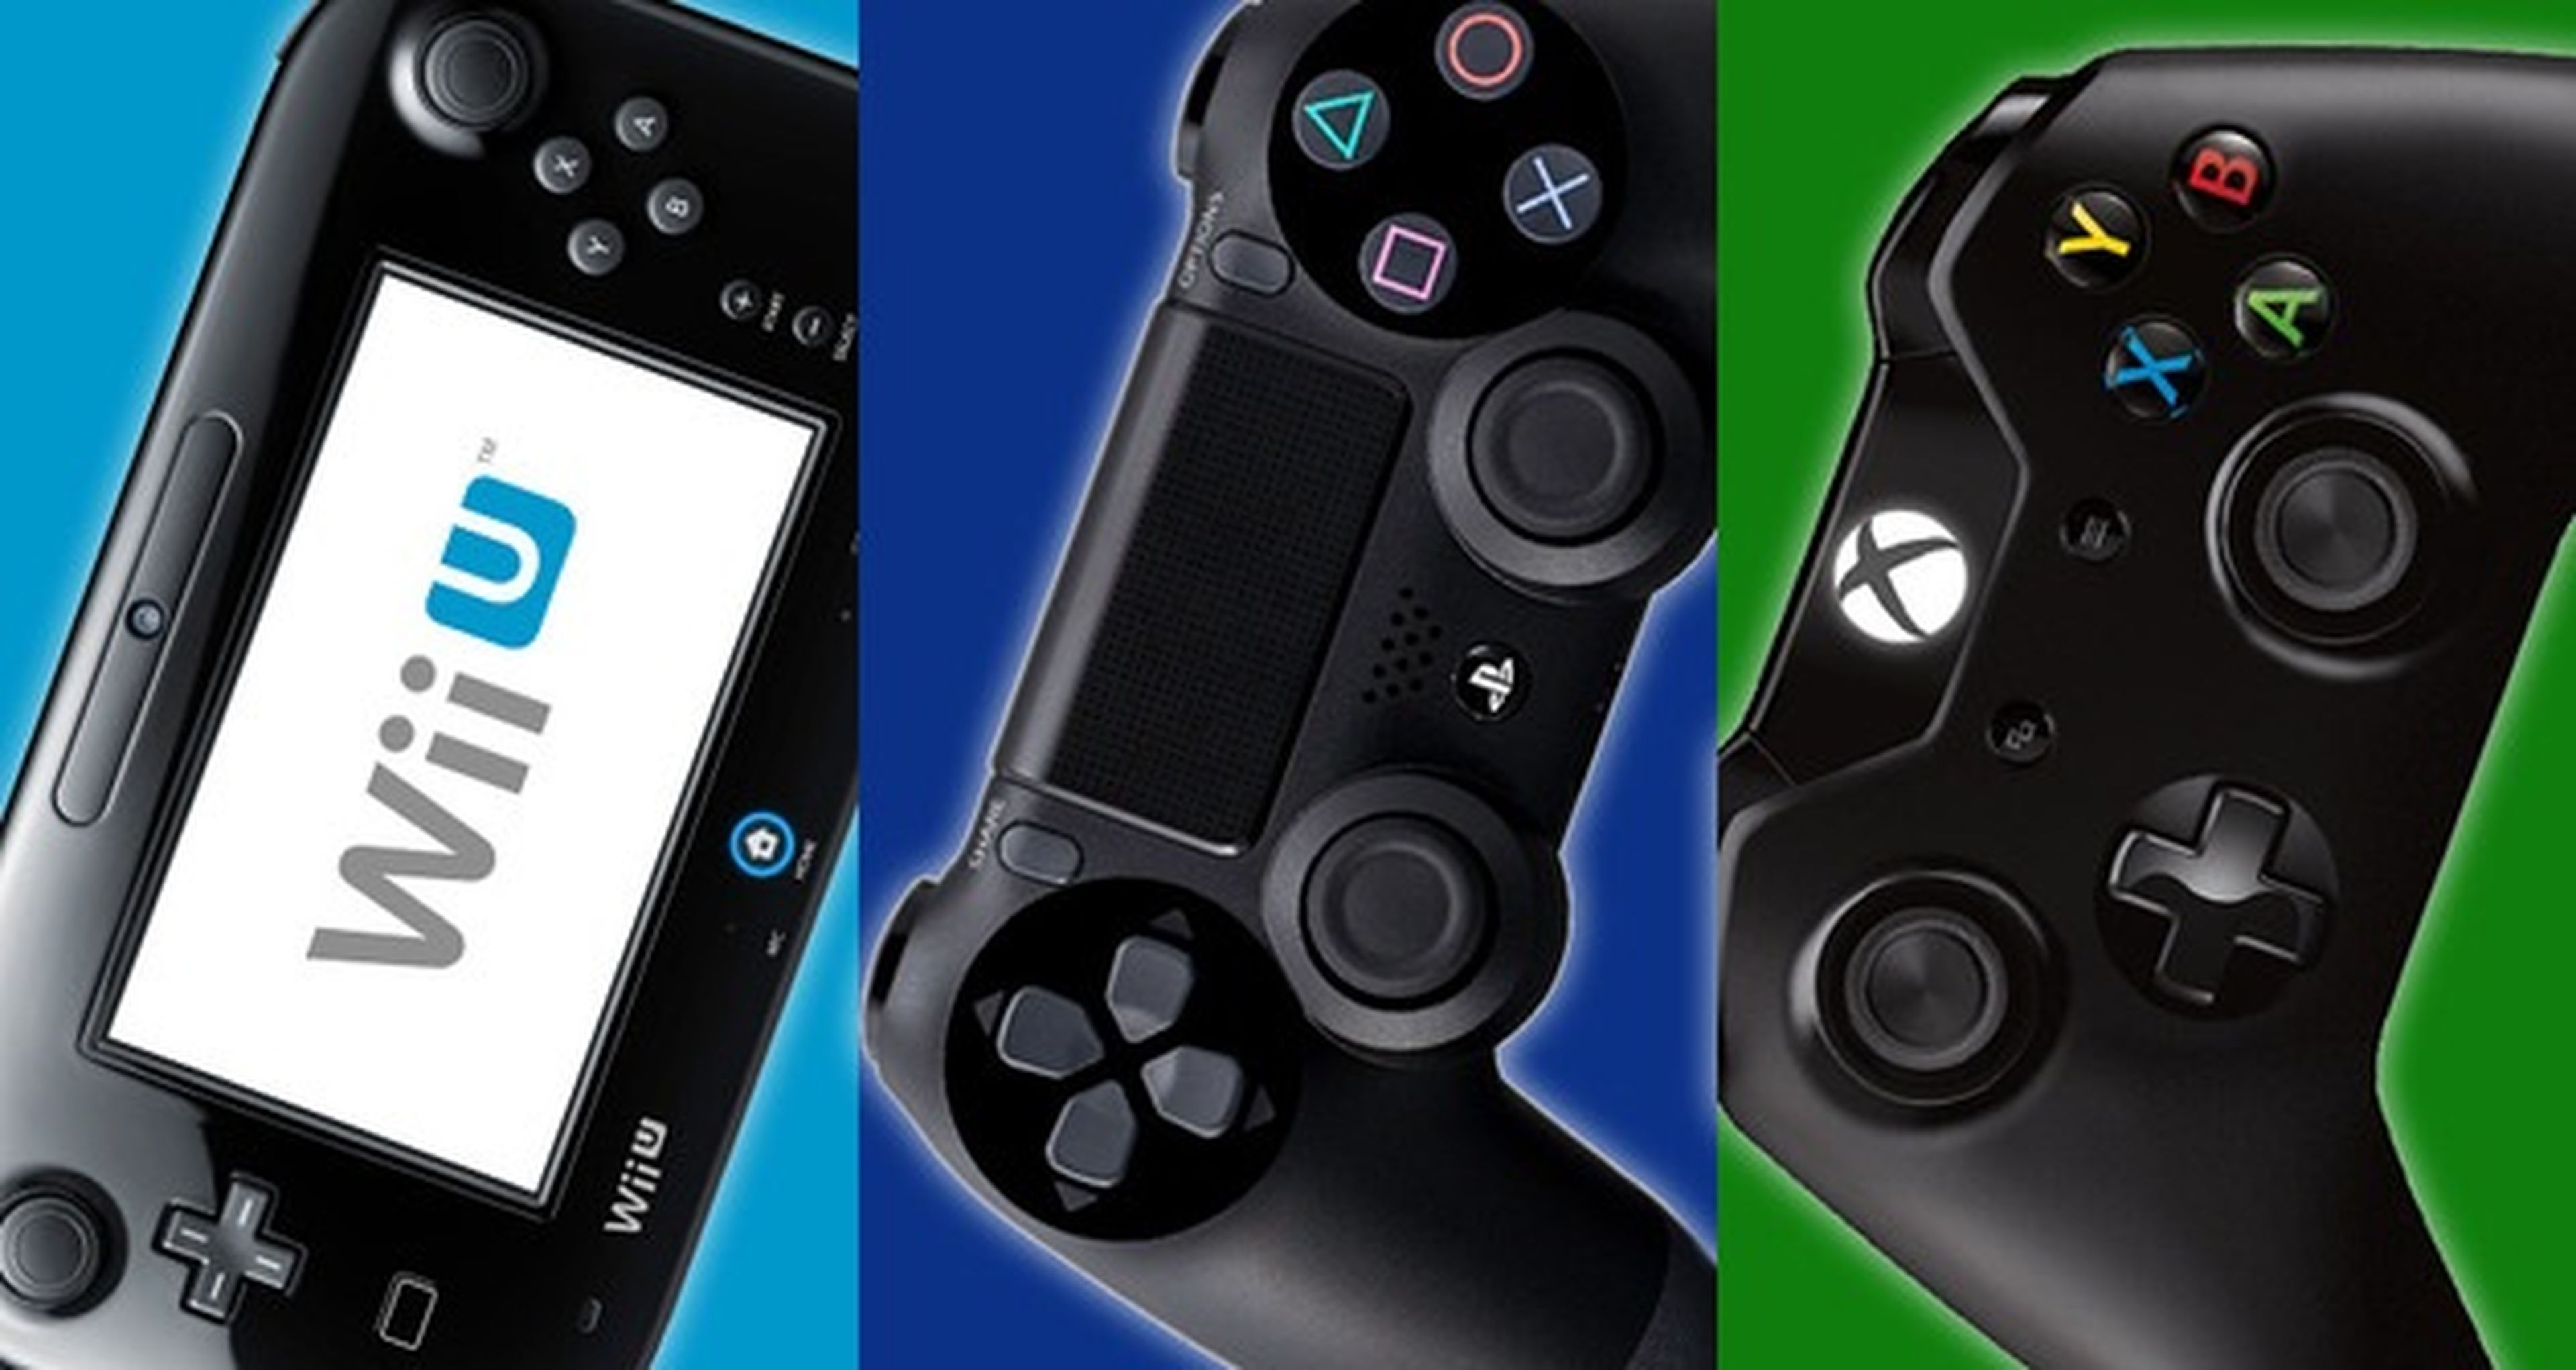 Comparación de exclusivas en PS4, Xbox One y Wii U según Metacritic